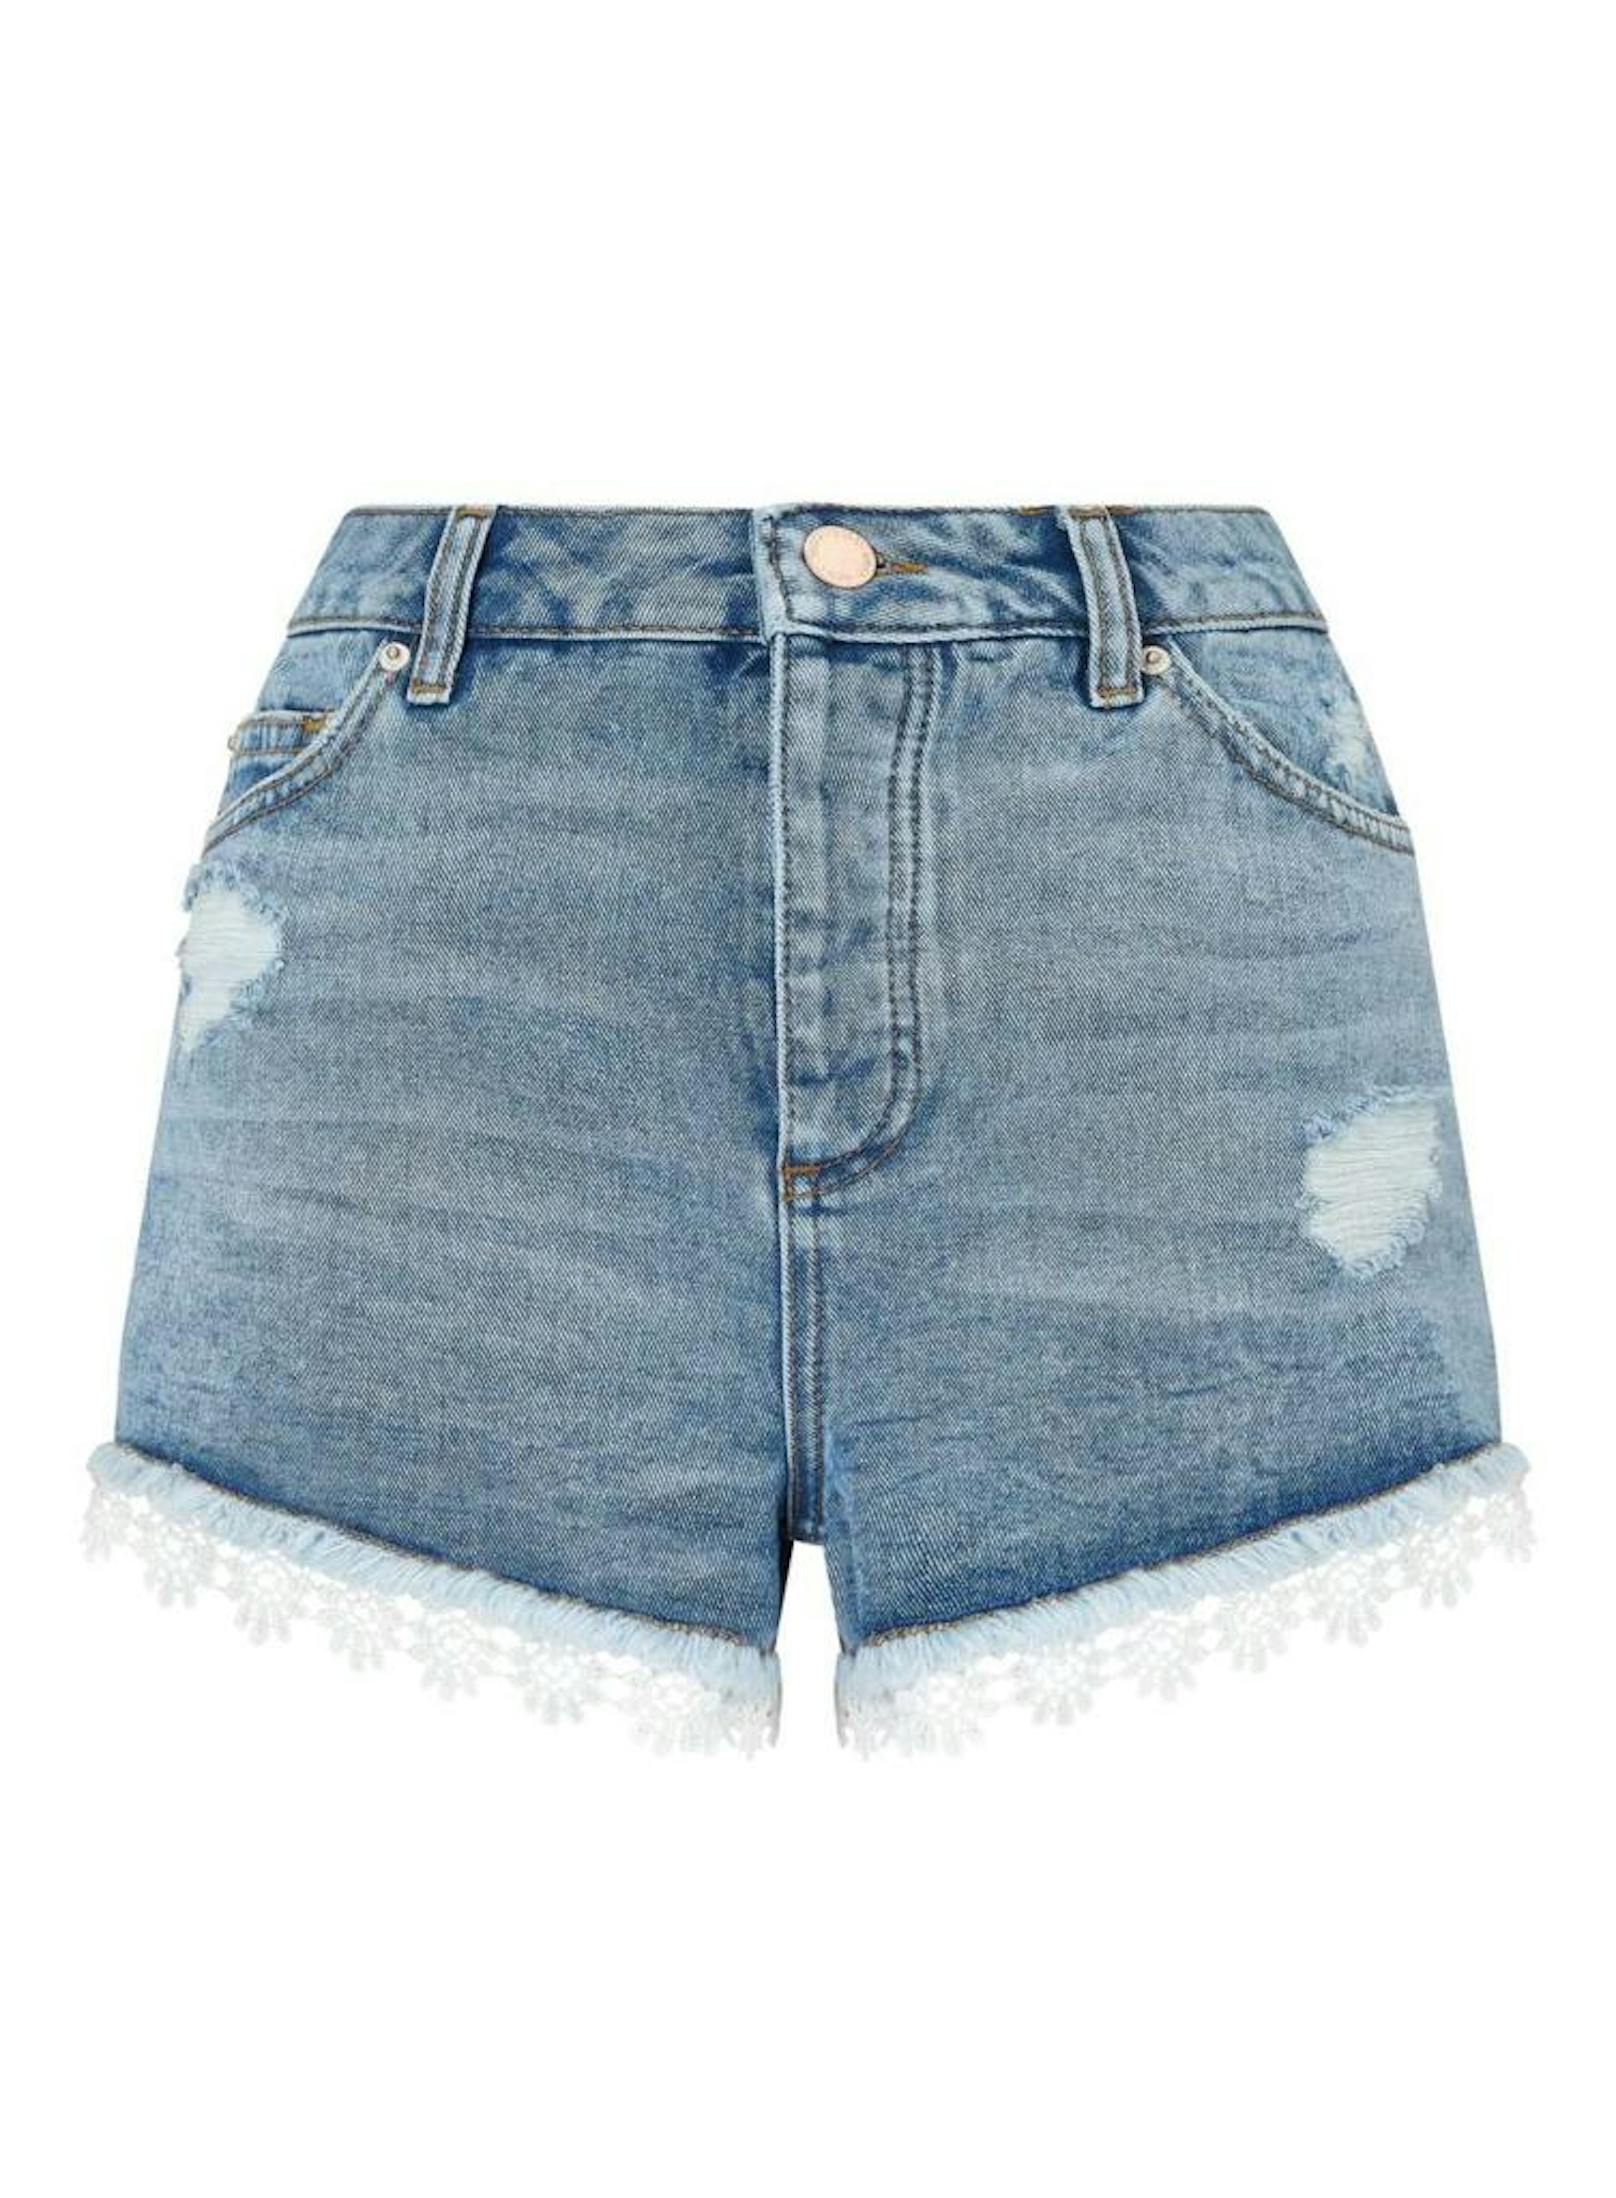 Wie die Dr Martens gehören auch die Jeans Shorts zu den Must-Haves, die auf keiner Festival-Packliste fehlen dürfen. (Foto: Miss Selfridge)